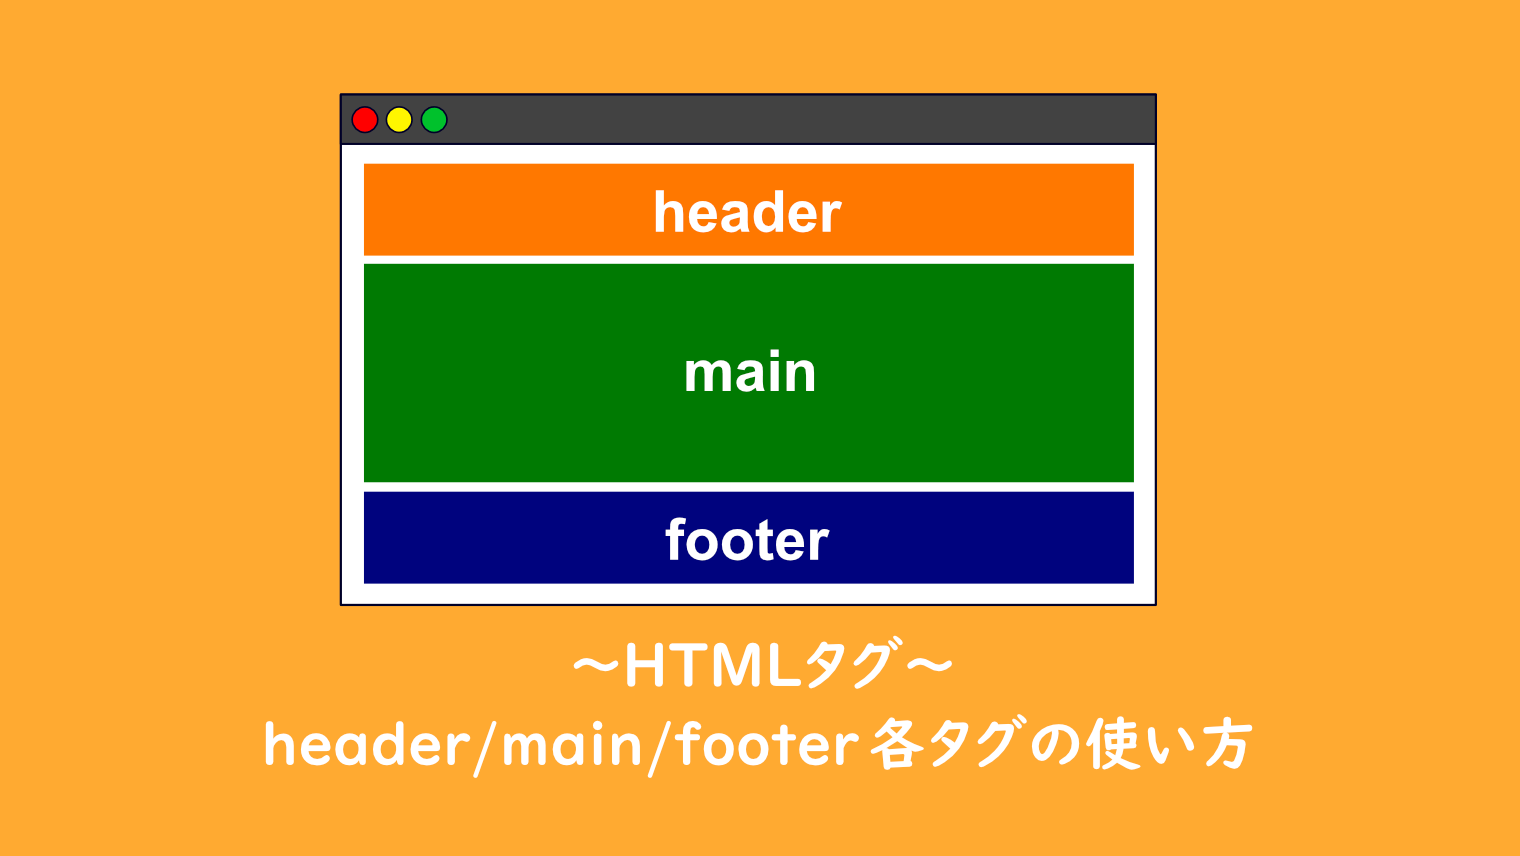 【HTML】header/main/footer各タグの使い方